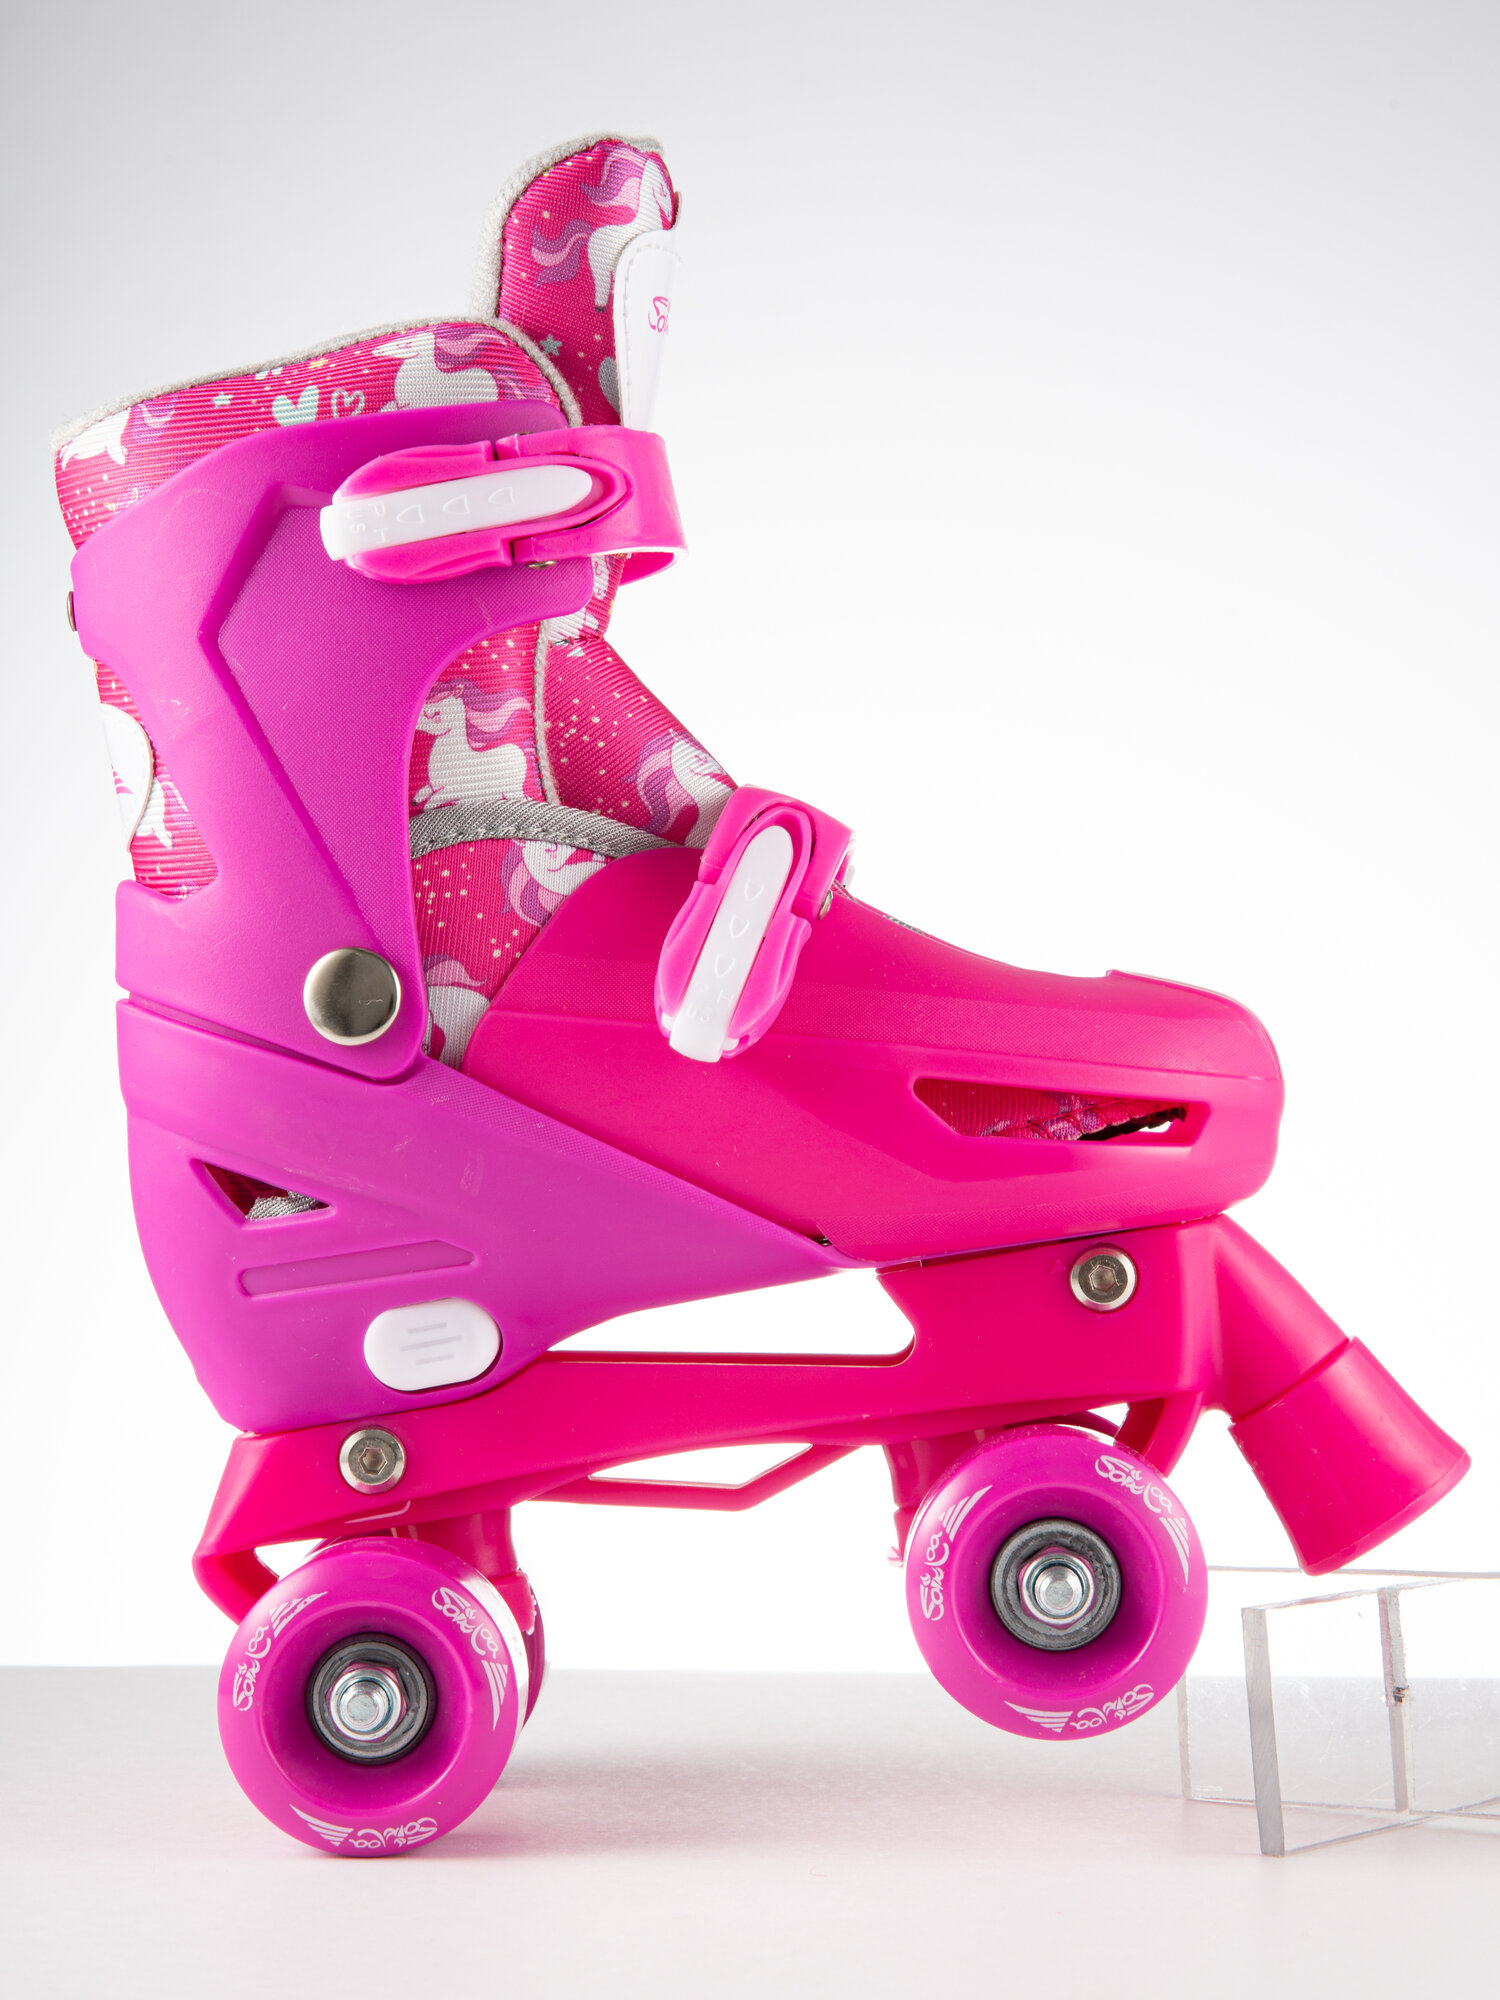 Ролики роликовые коньки квады детские раздвижные 27-30 размер, цвет розовый, с защитой